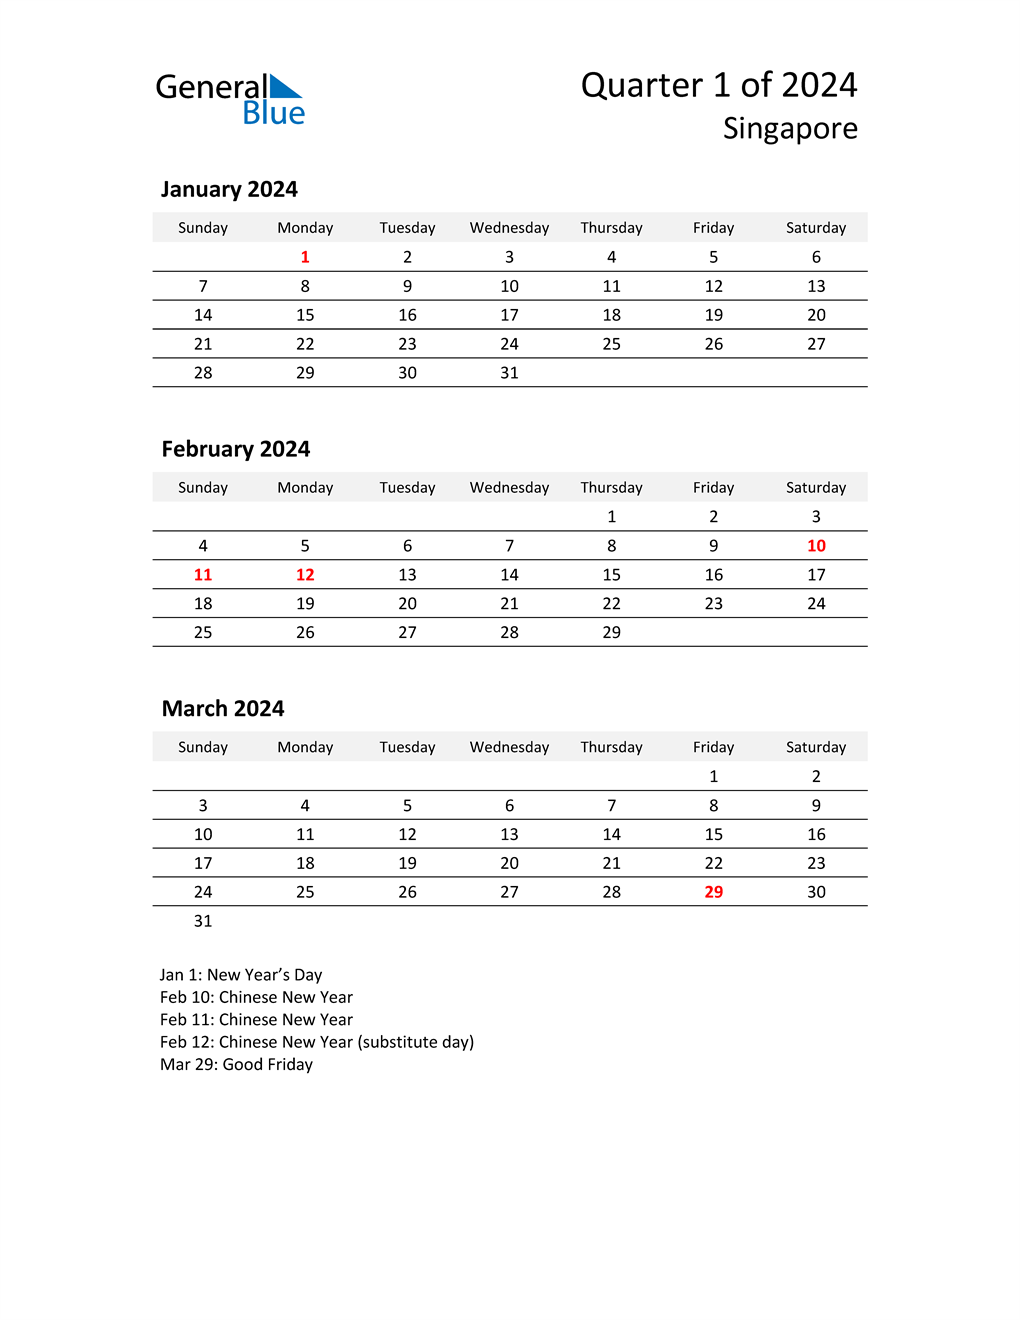 Q1 2024 Quarterly Calendar with Singapore Holidays